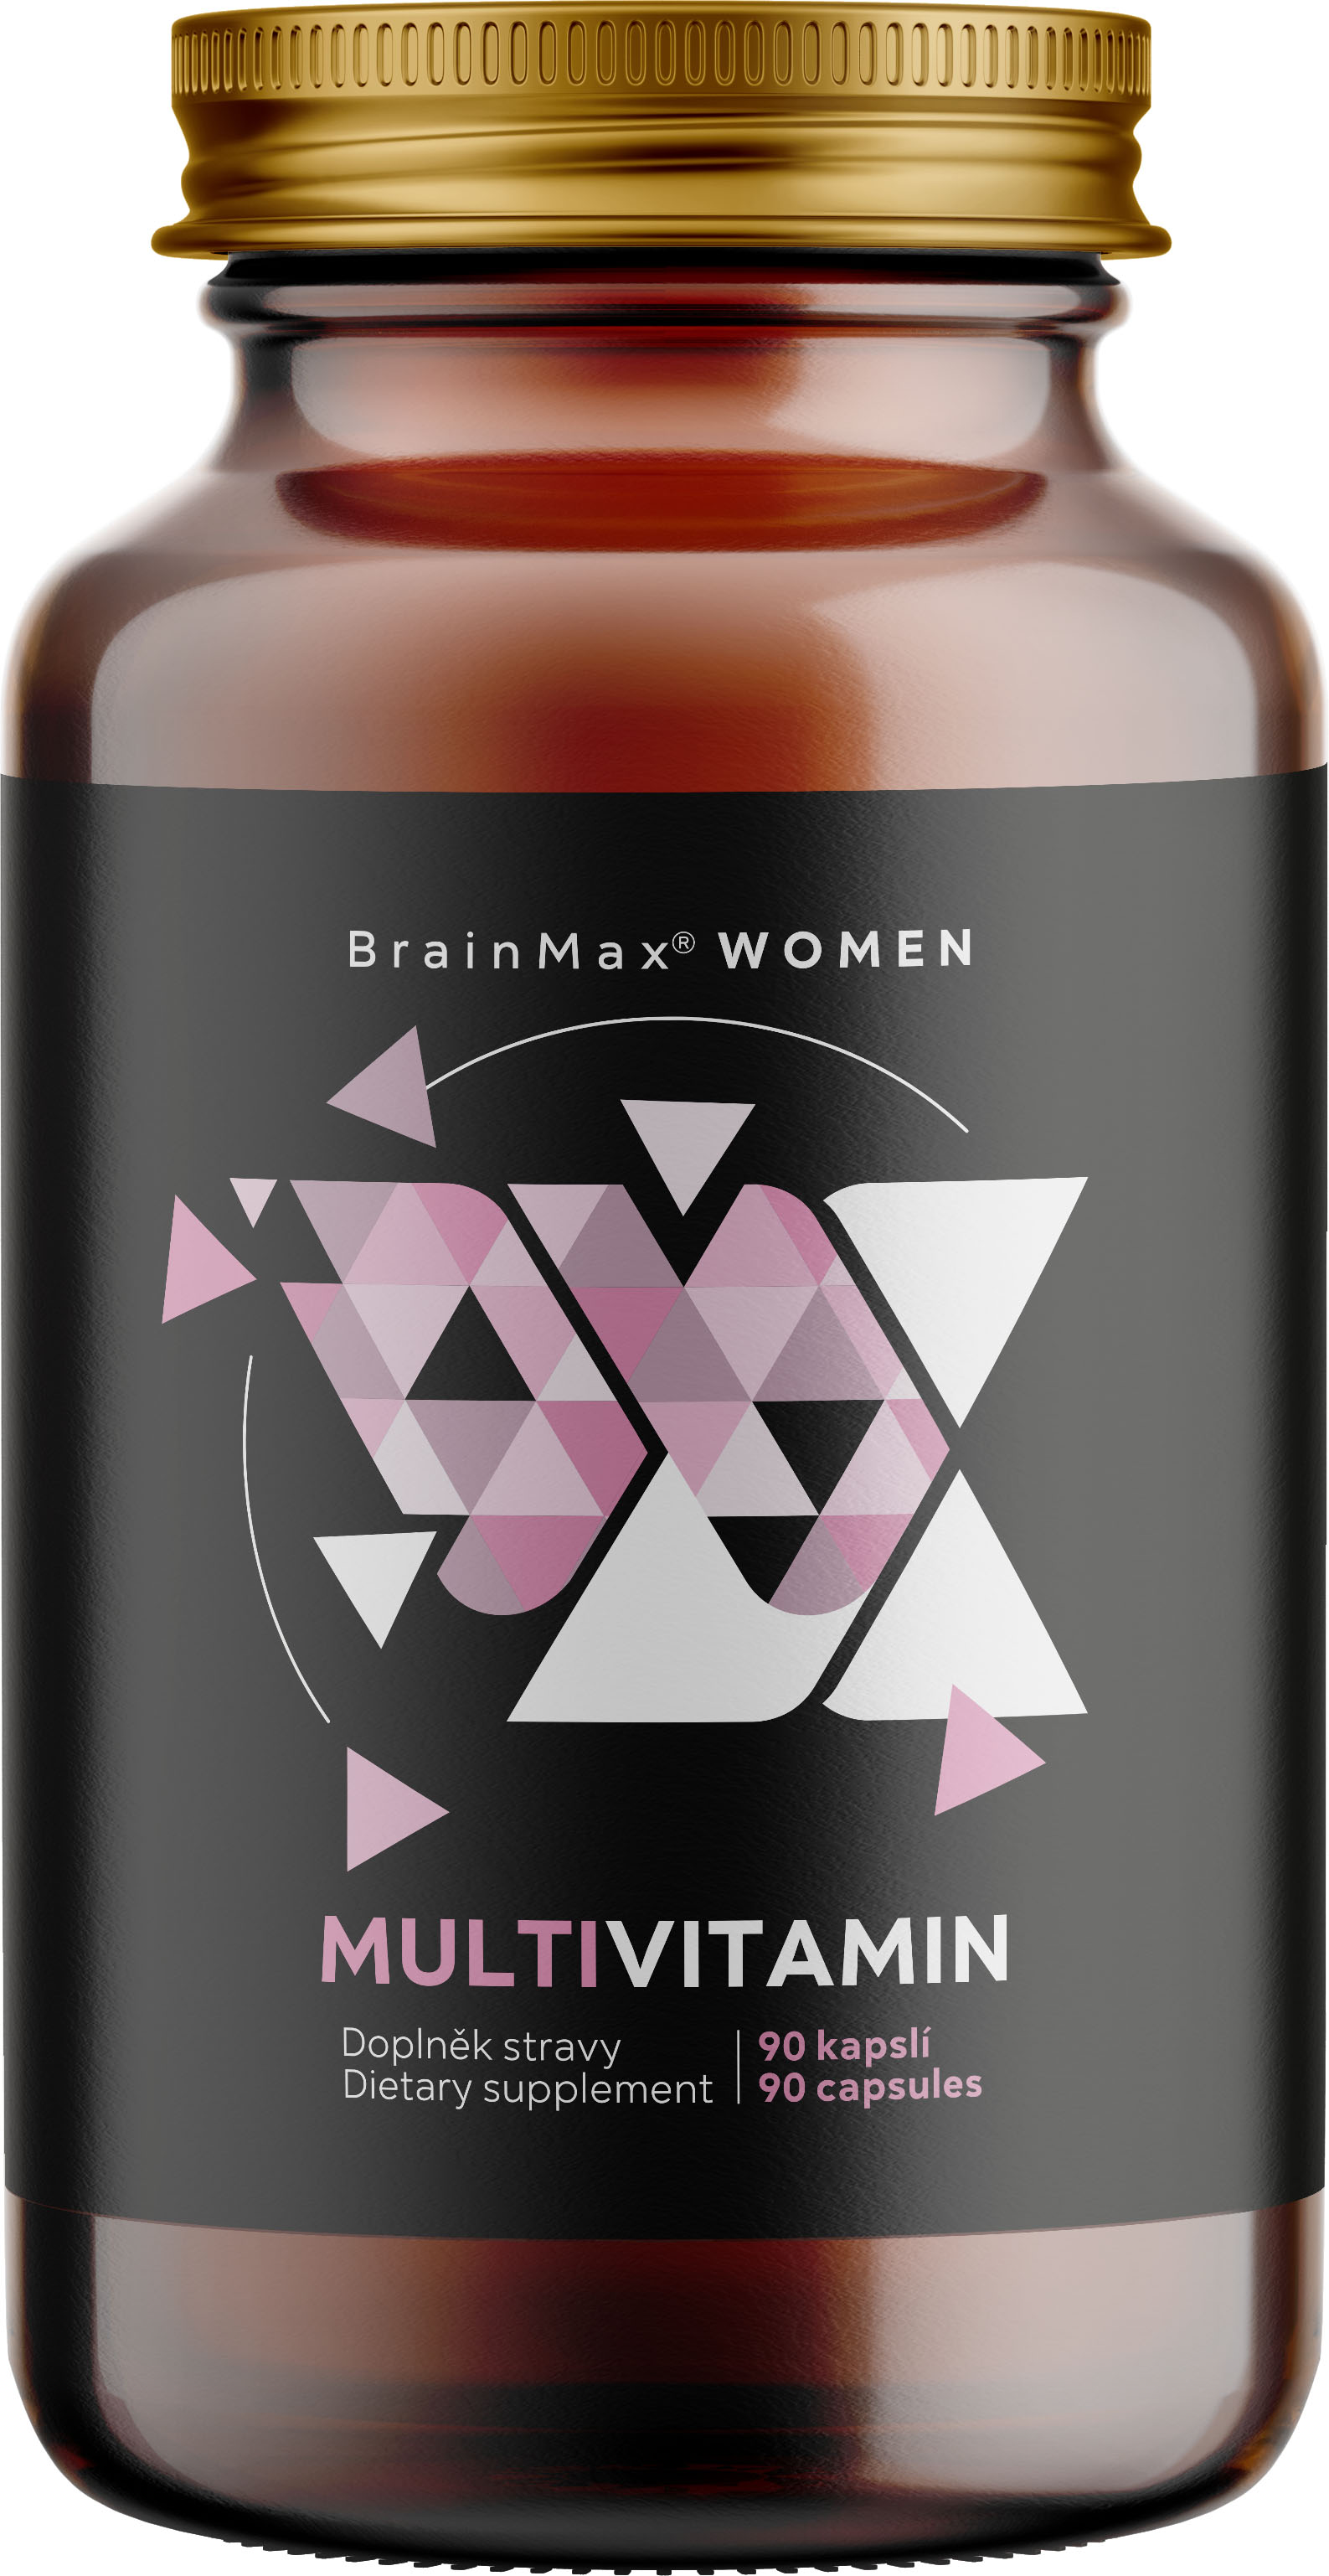 BrainMax Women Multivitamin, multivitamín pro ženy, 90 rostlinných kapslí 33 aktivních látek pro ženskou imunitu, krásu a hormonální rovnováhu, doplněk stravy